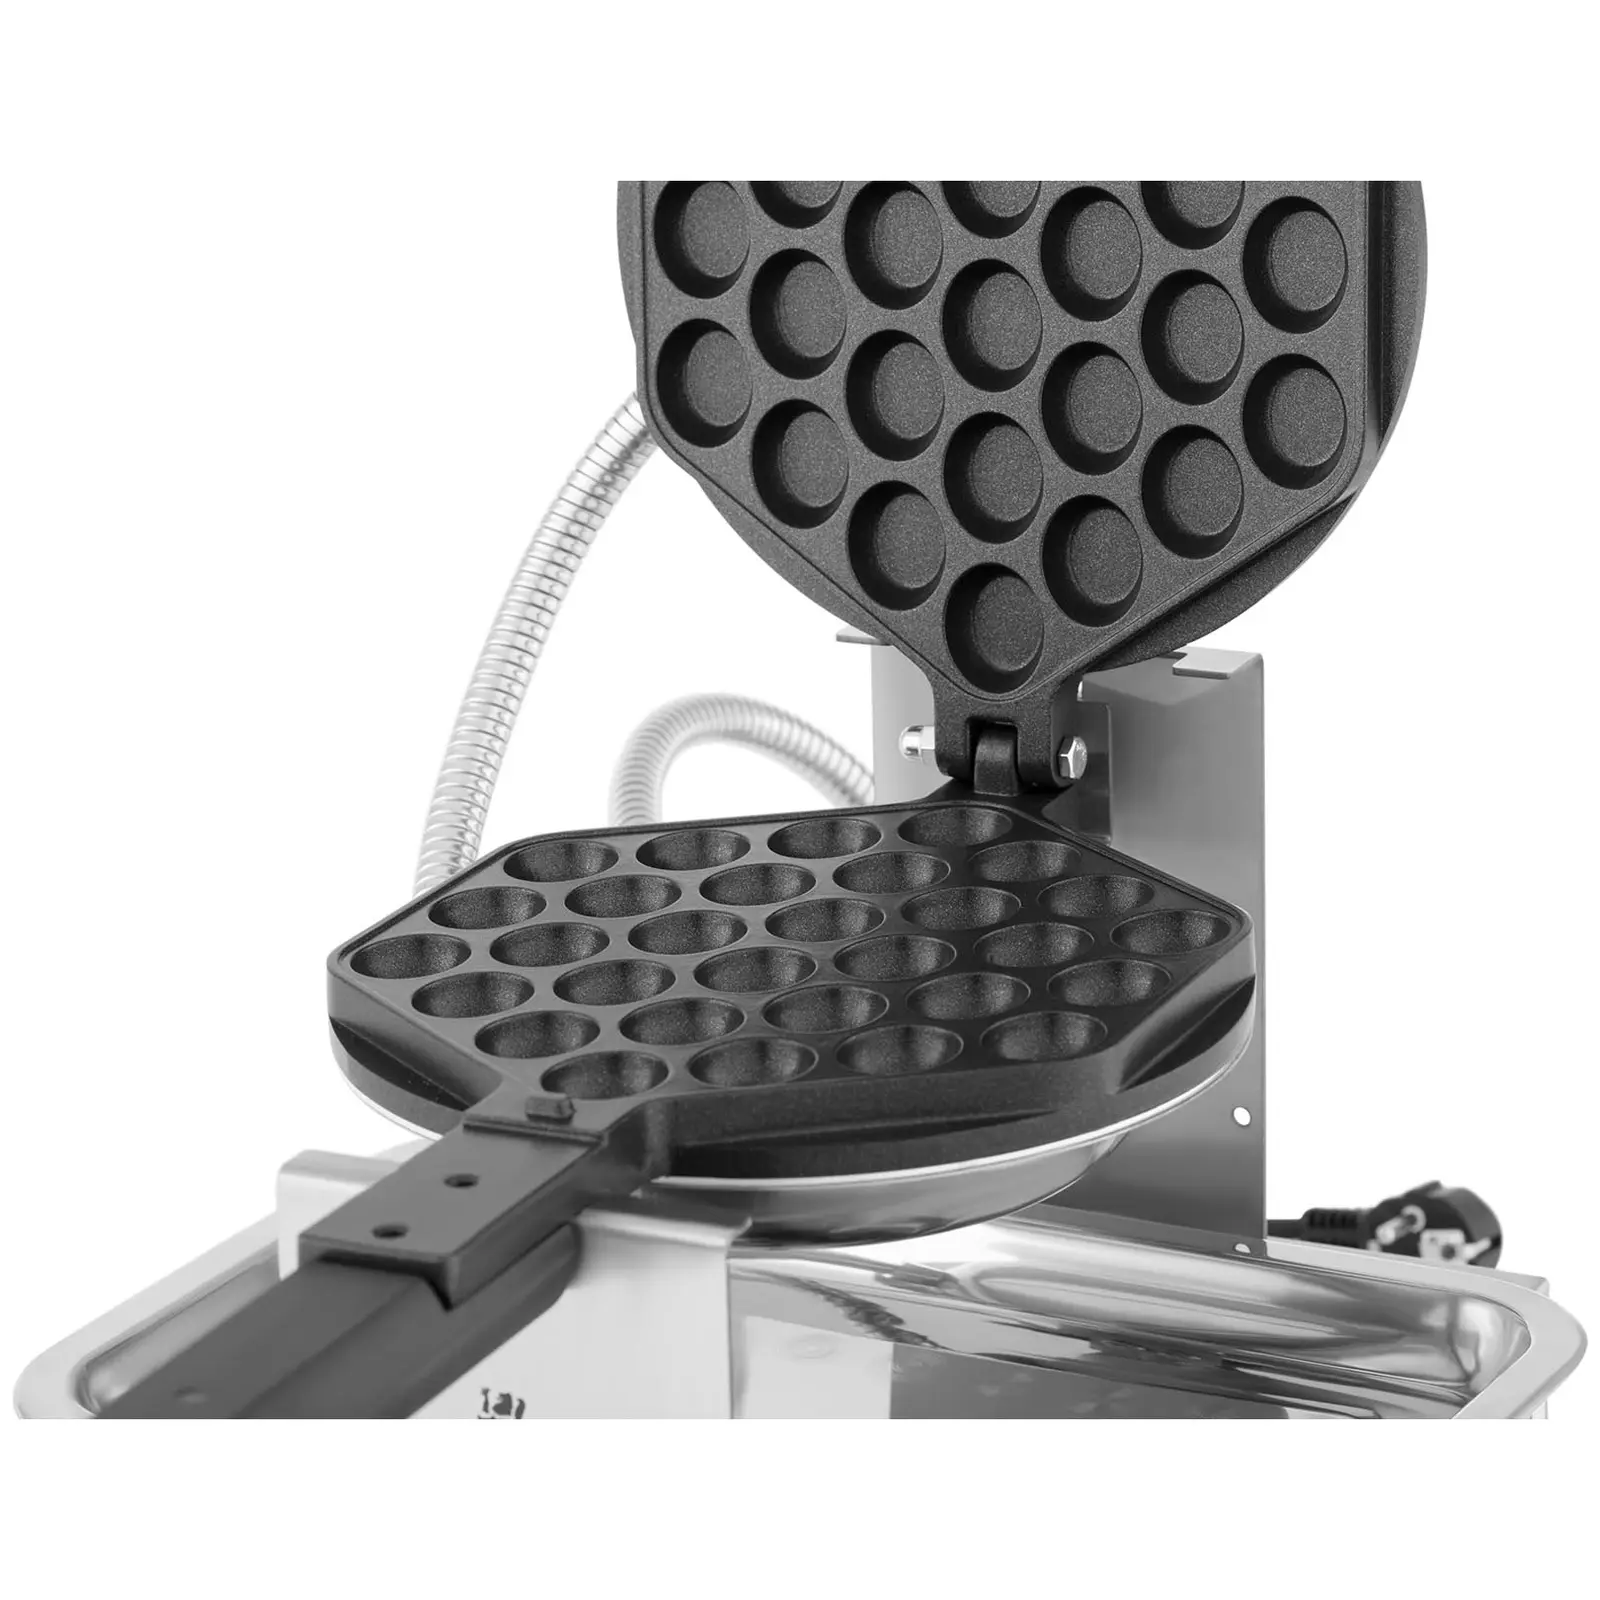 Máquina de waffles - bubble - 1400 W - 50 - 250°C - temporizador: 0-15 min